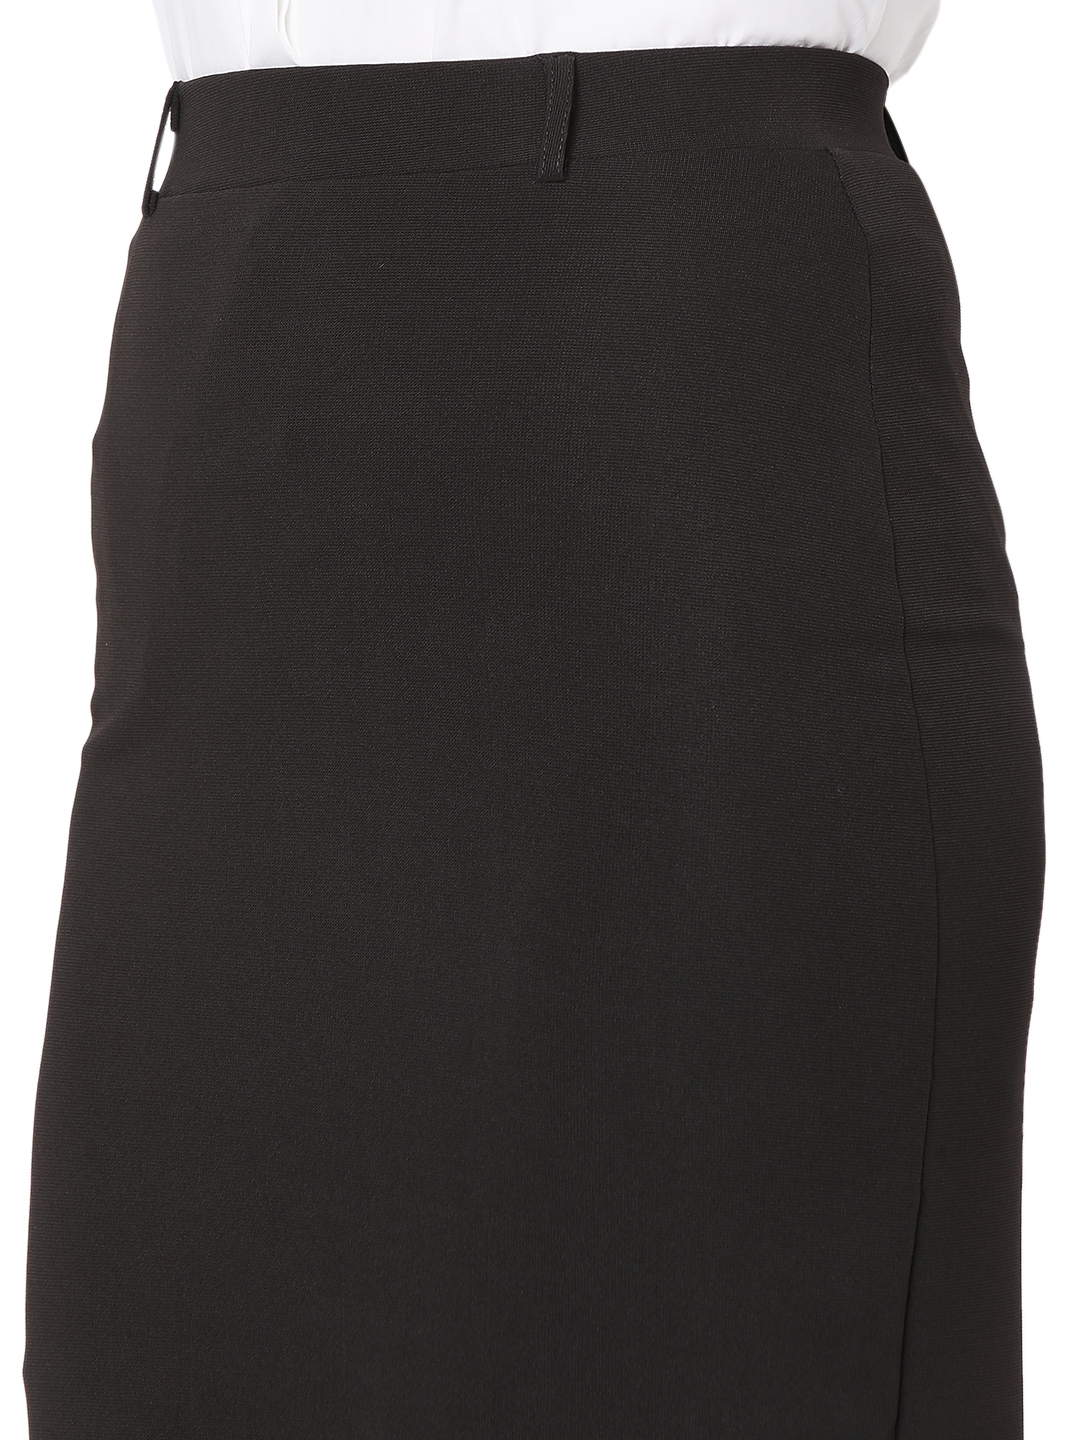 Smarty Pants | Smarty Pants women's cotton lycra black color pencil skirt. 4